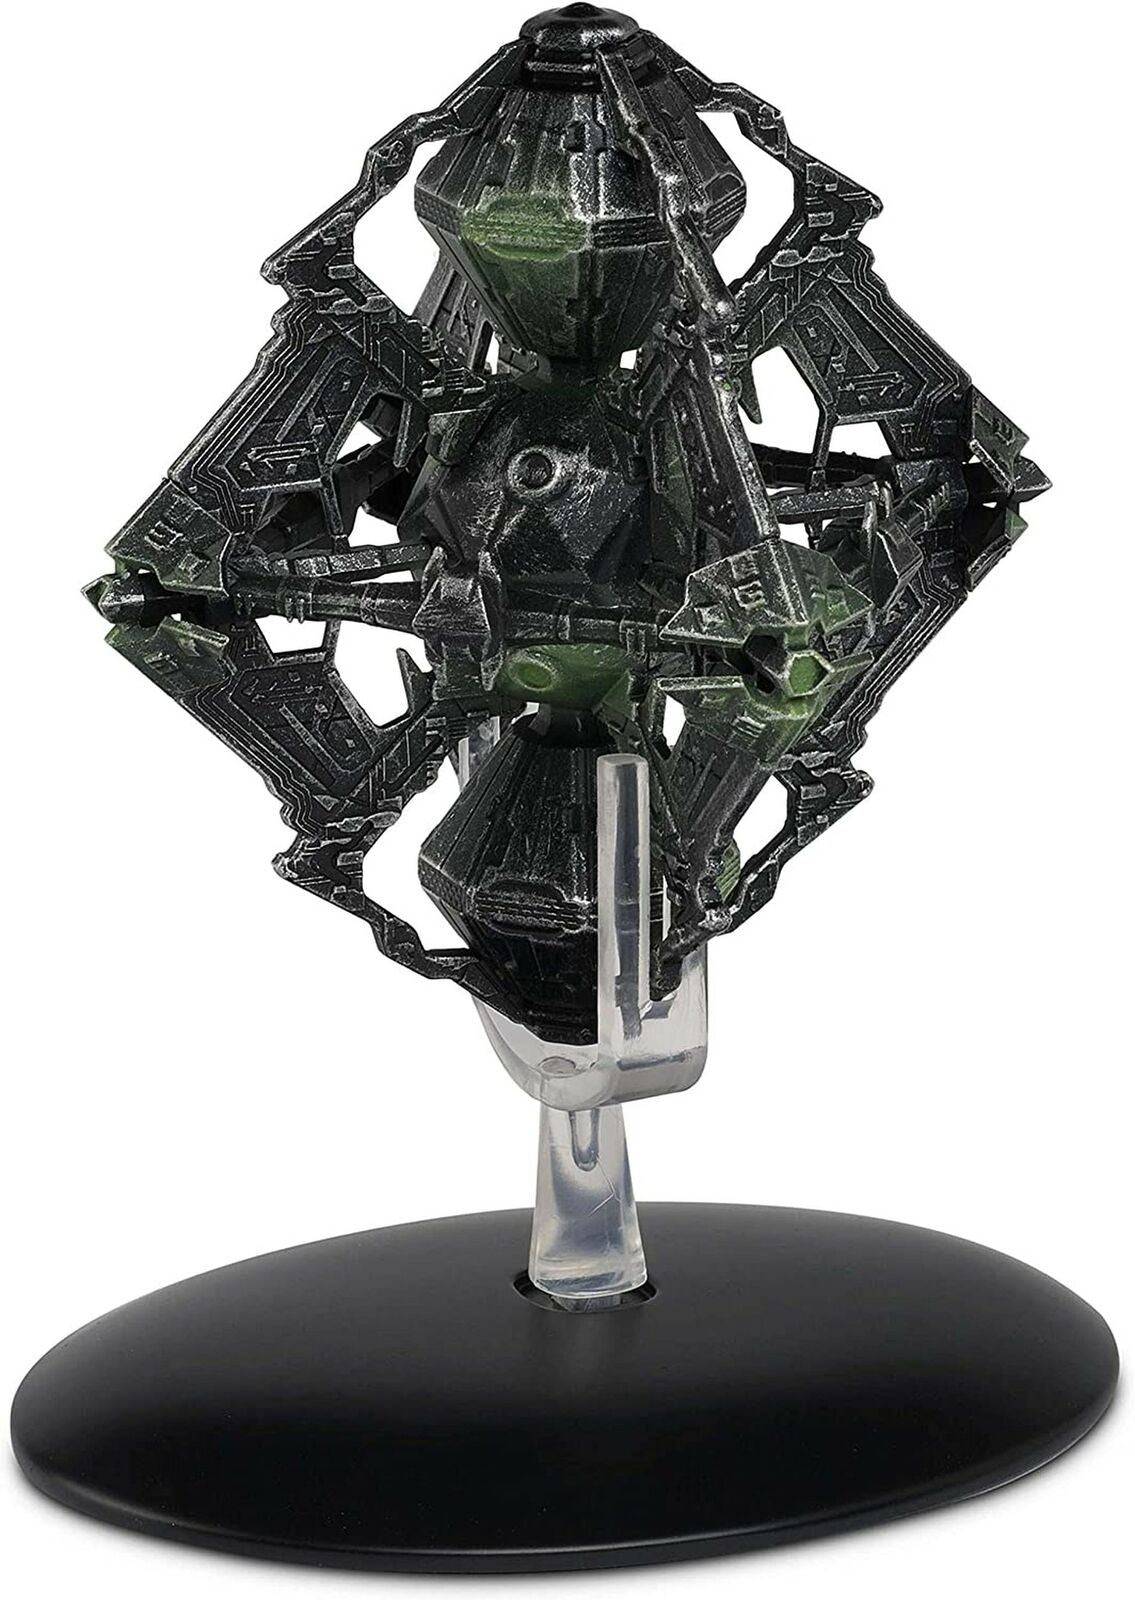 #109 Borg Queen's Vessel Starship Die-Cast Model (Eaglemoss / Star Trek)